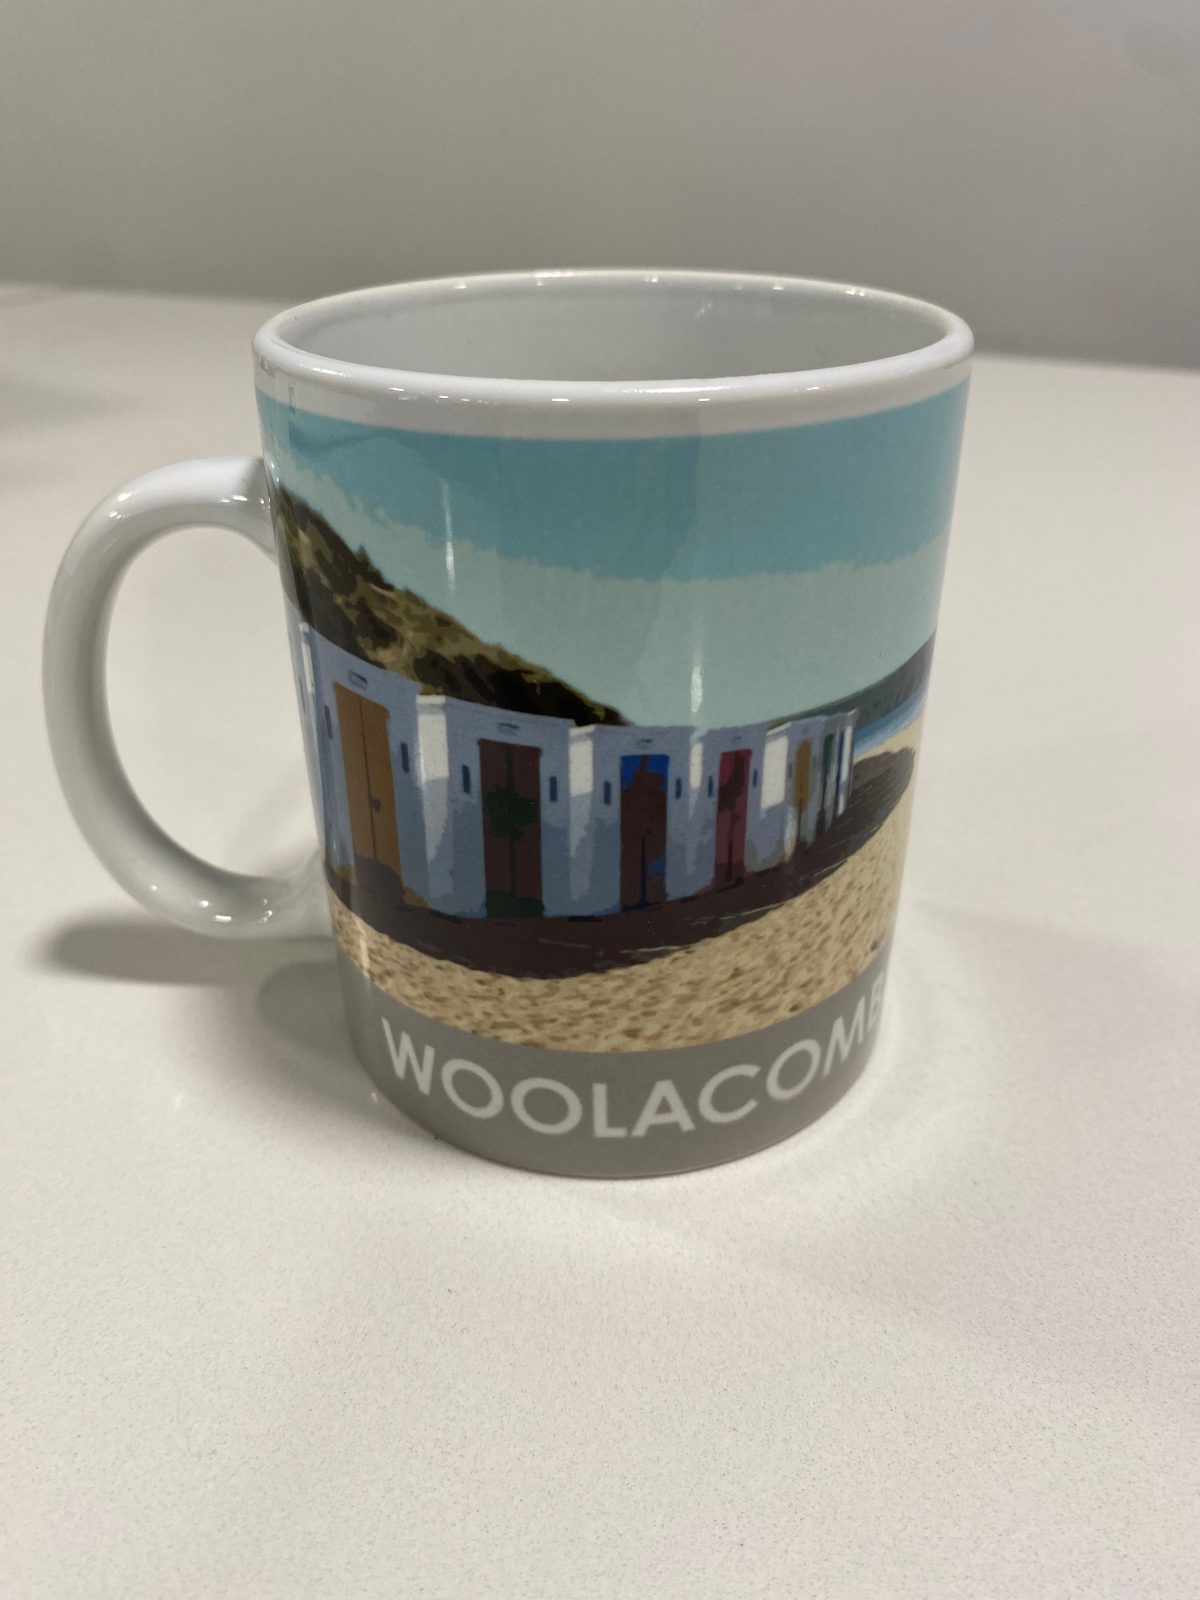 Woolacombe Mug